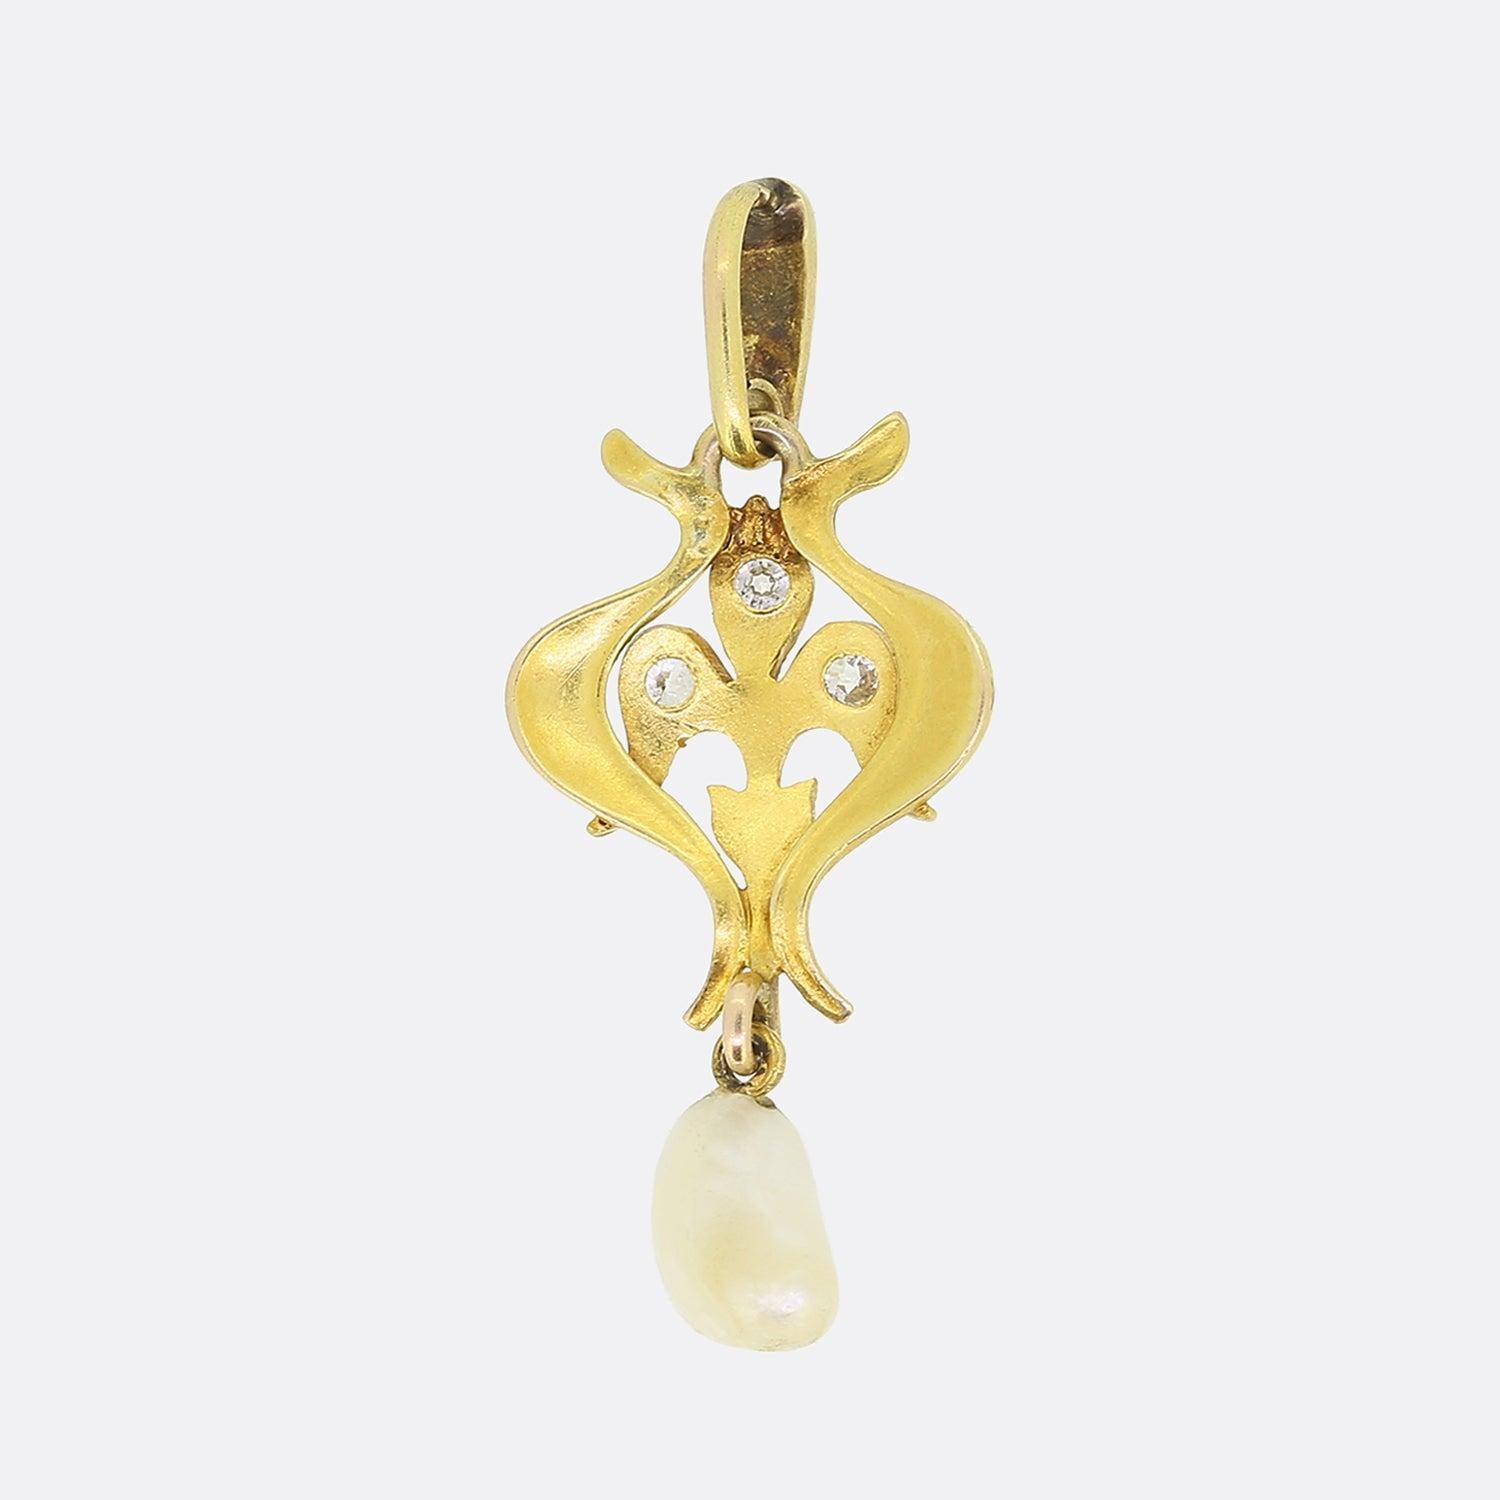 Il s'agit d'un pendentif Art Nouveau en or jaune 15ct, orné de perles naturelles et de diamants. Le cadre emblématique de l'Art nouveau, très décoré, présente un motif floral composé de feuilles sinueuses et d'une fleur de lys sertie de diamants au